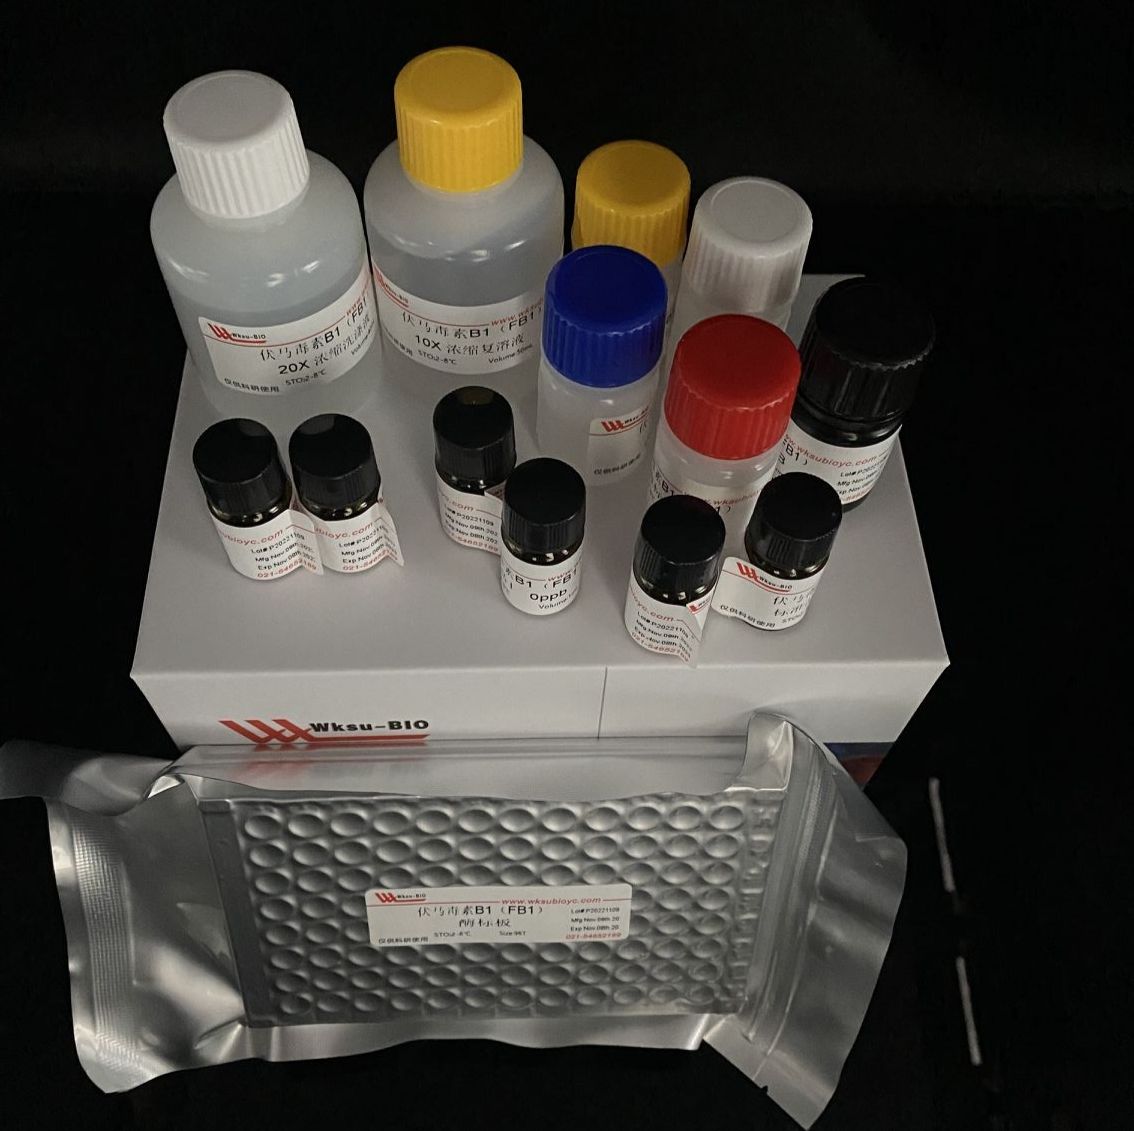 土壤锰过氧化物酶(S-Mnp)试剂盒,微板法